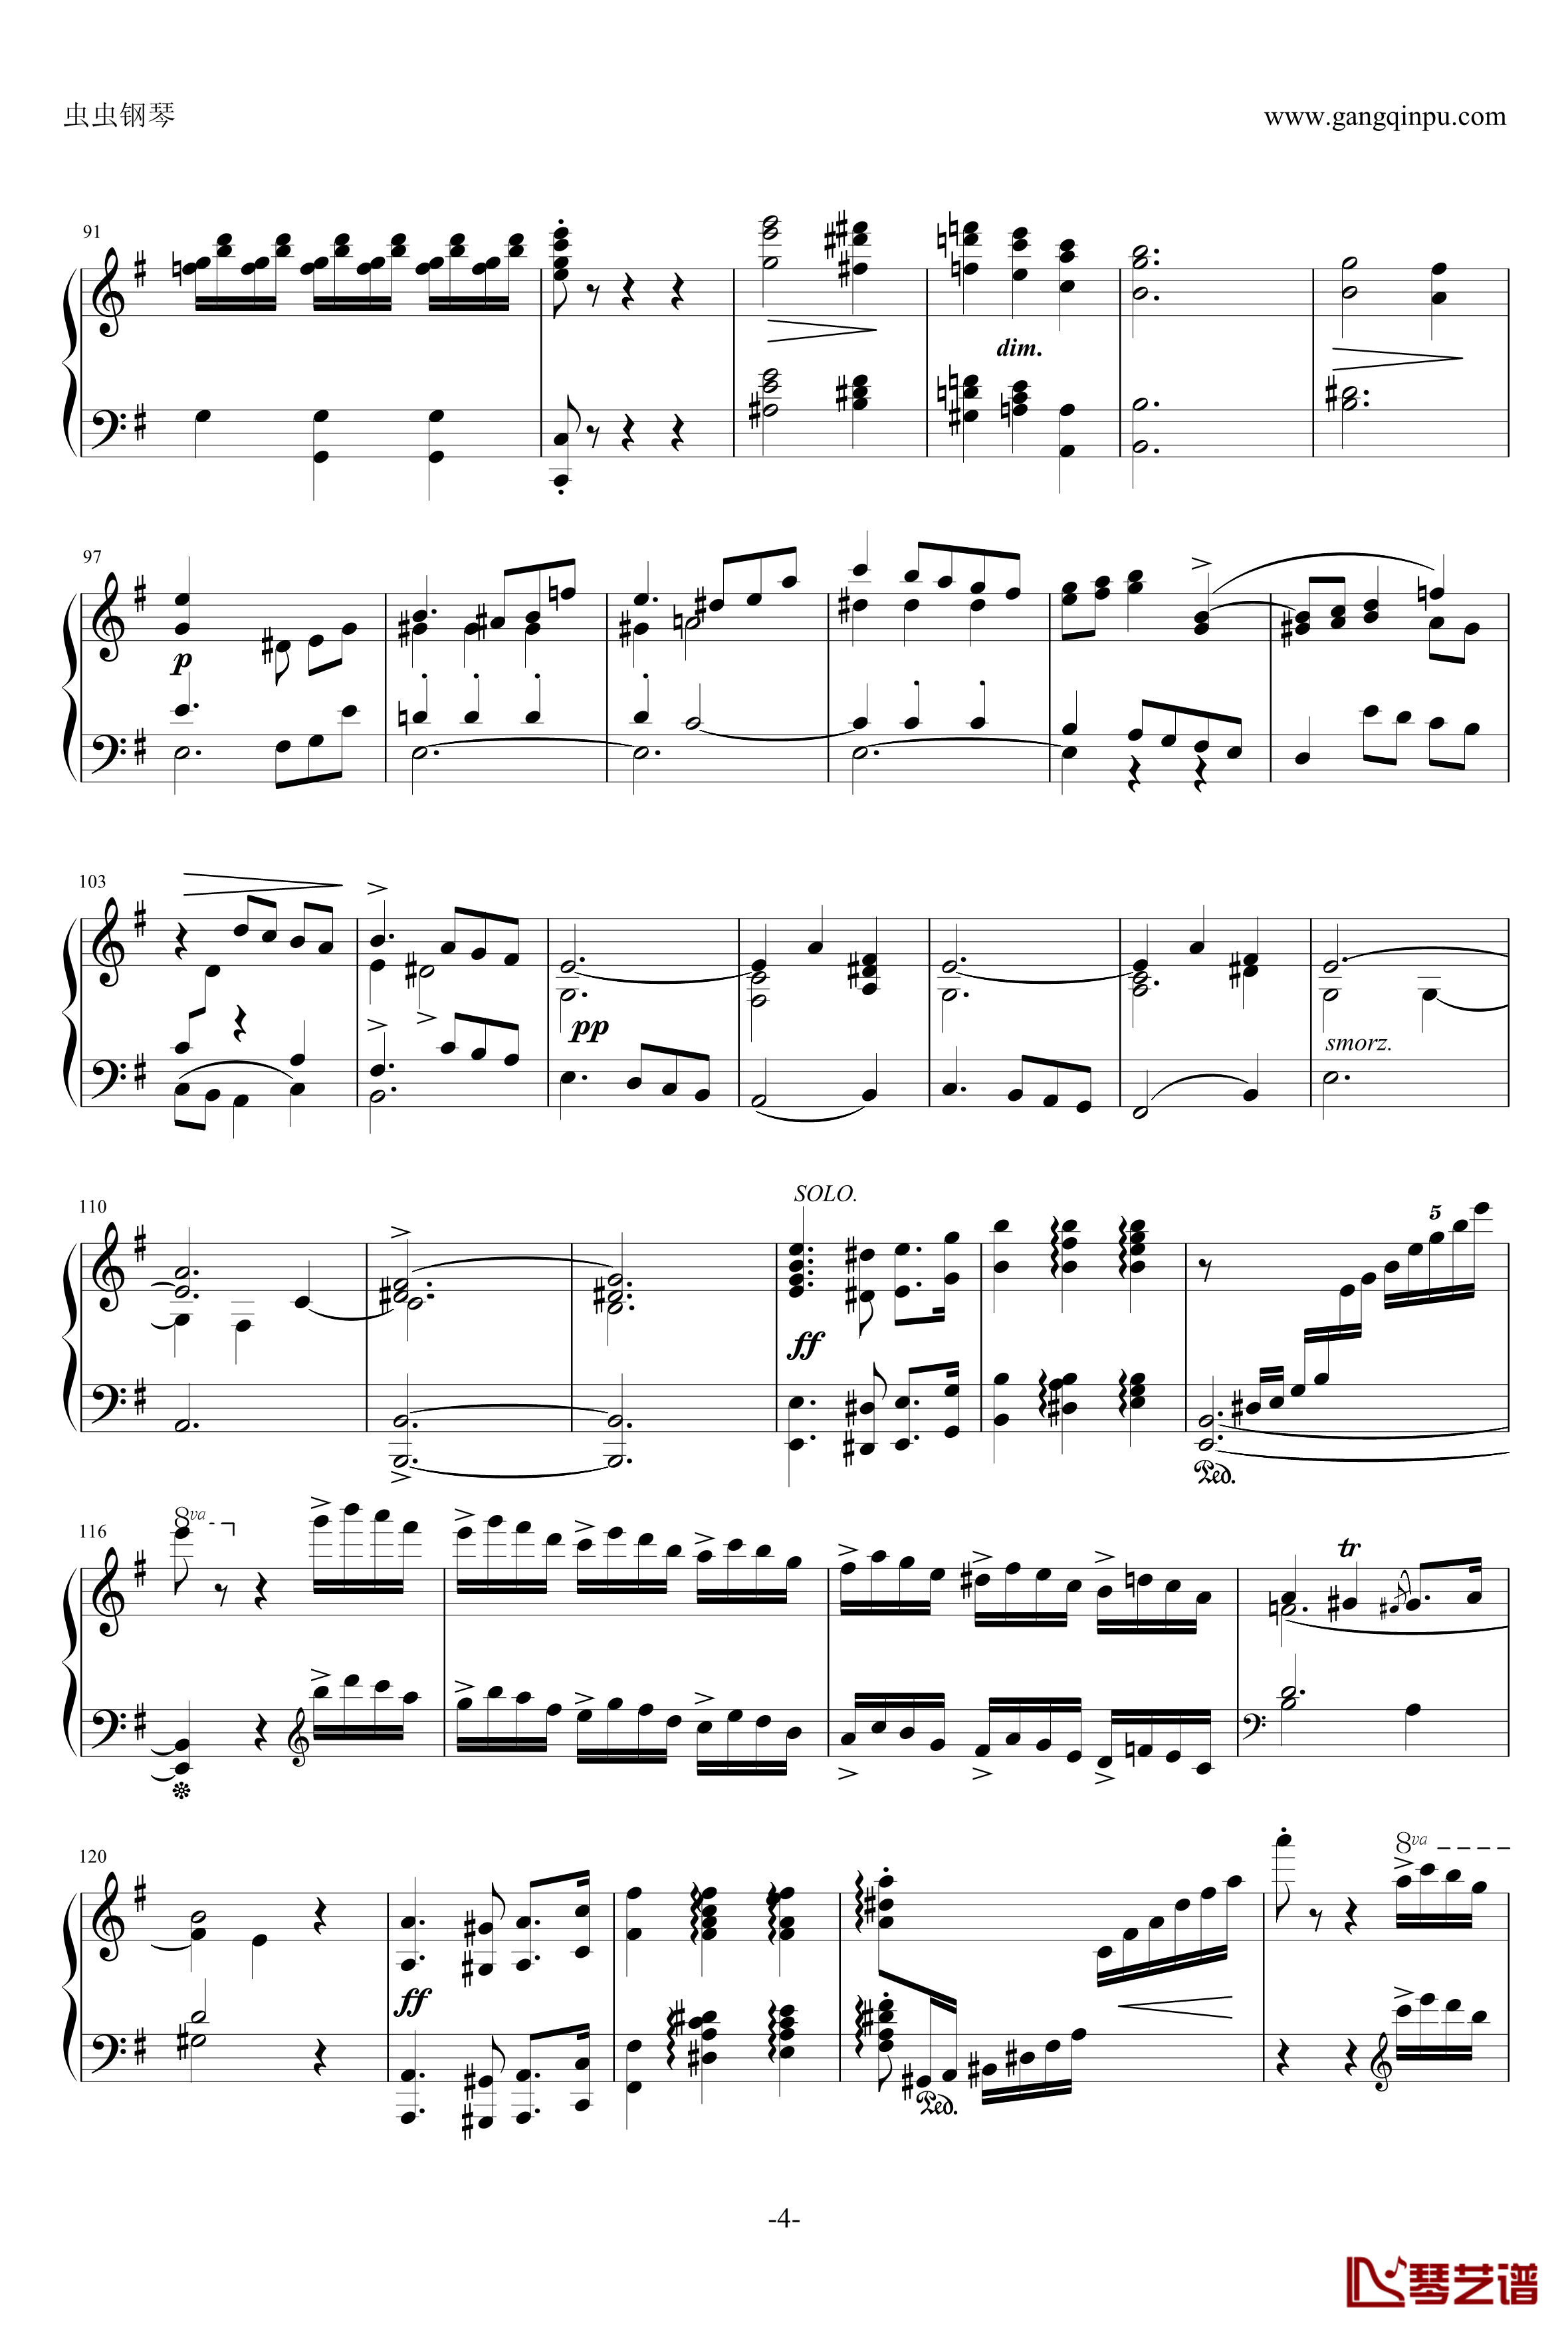 e小调钢琴协奏曲钢琴谱-乐之琴简易钢琴版-肖邦-chopin4